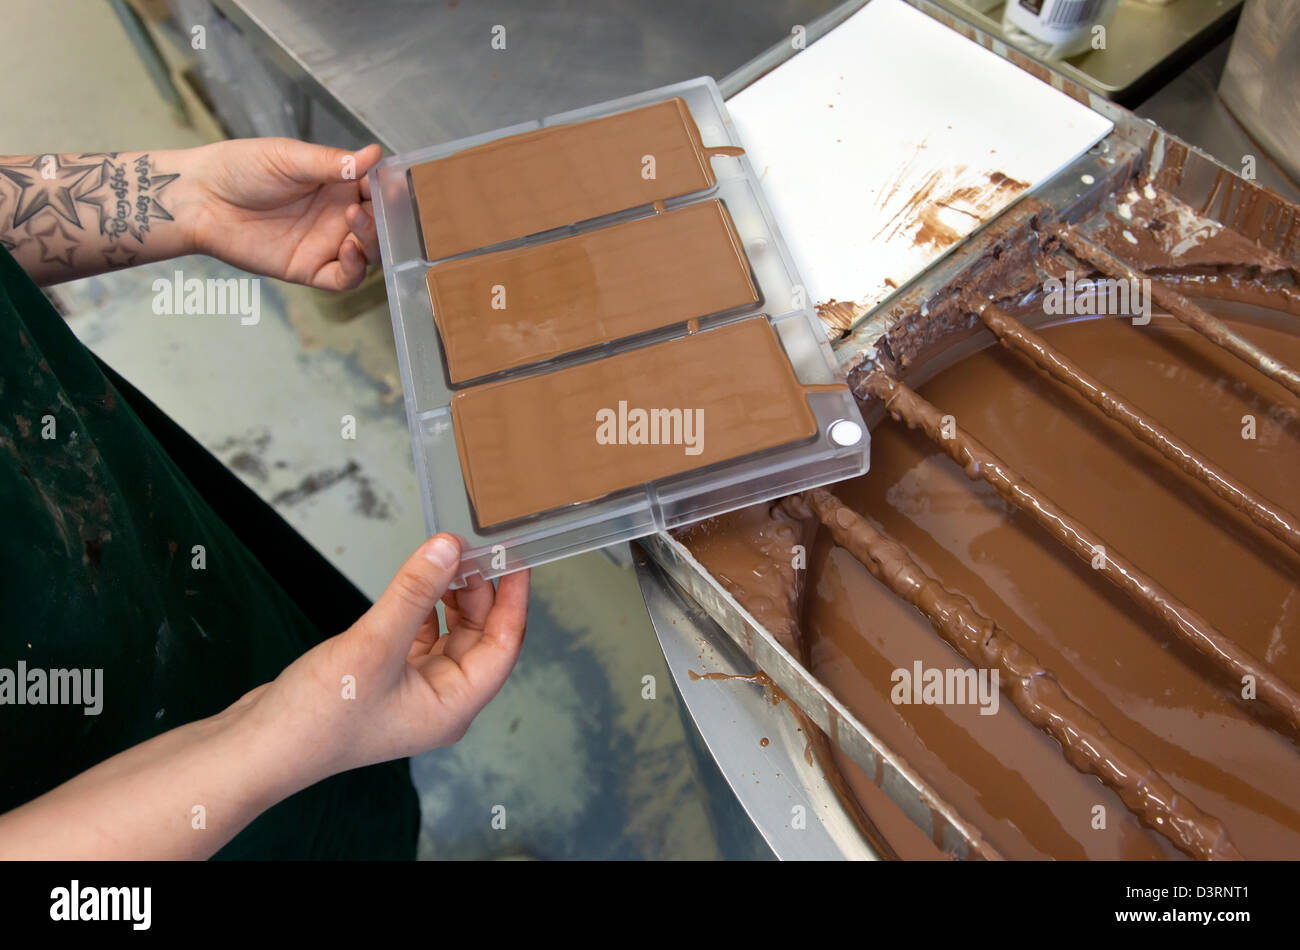 Berlin, Deutschland, Mitrabeiterin von Chocri füllt eine Schokolade Orte in Formen Stockfoto